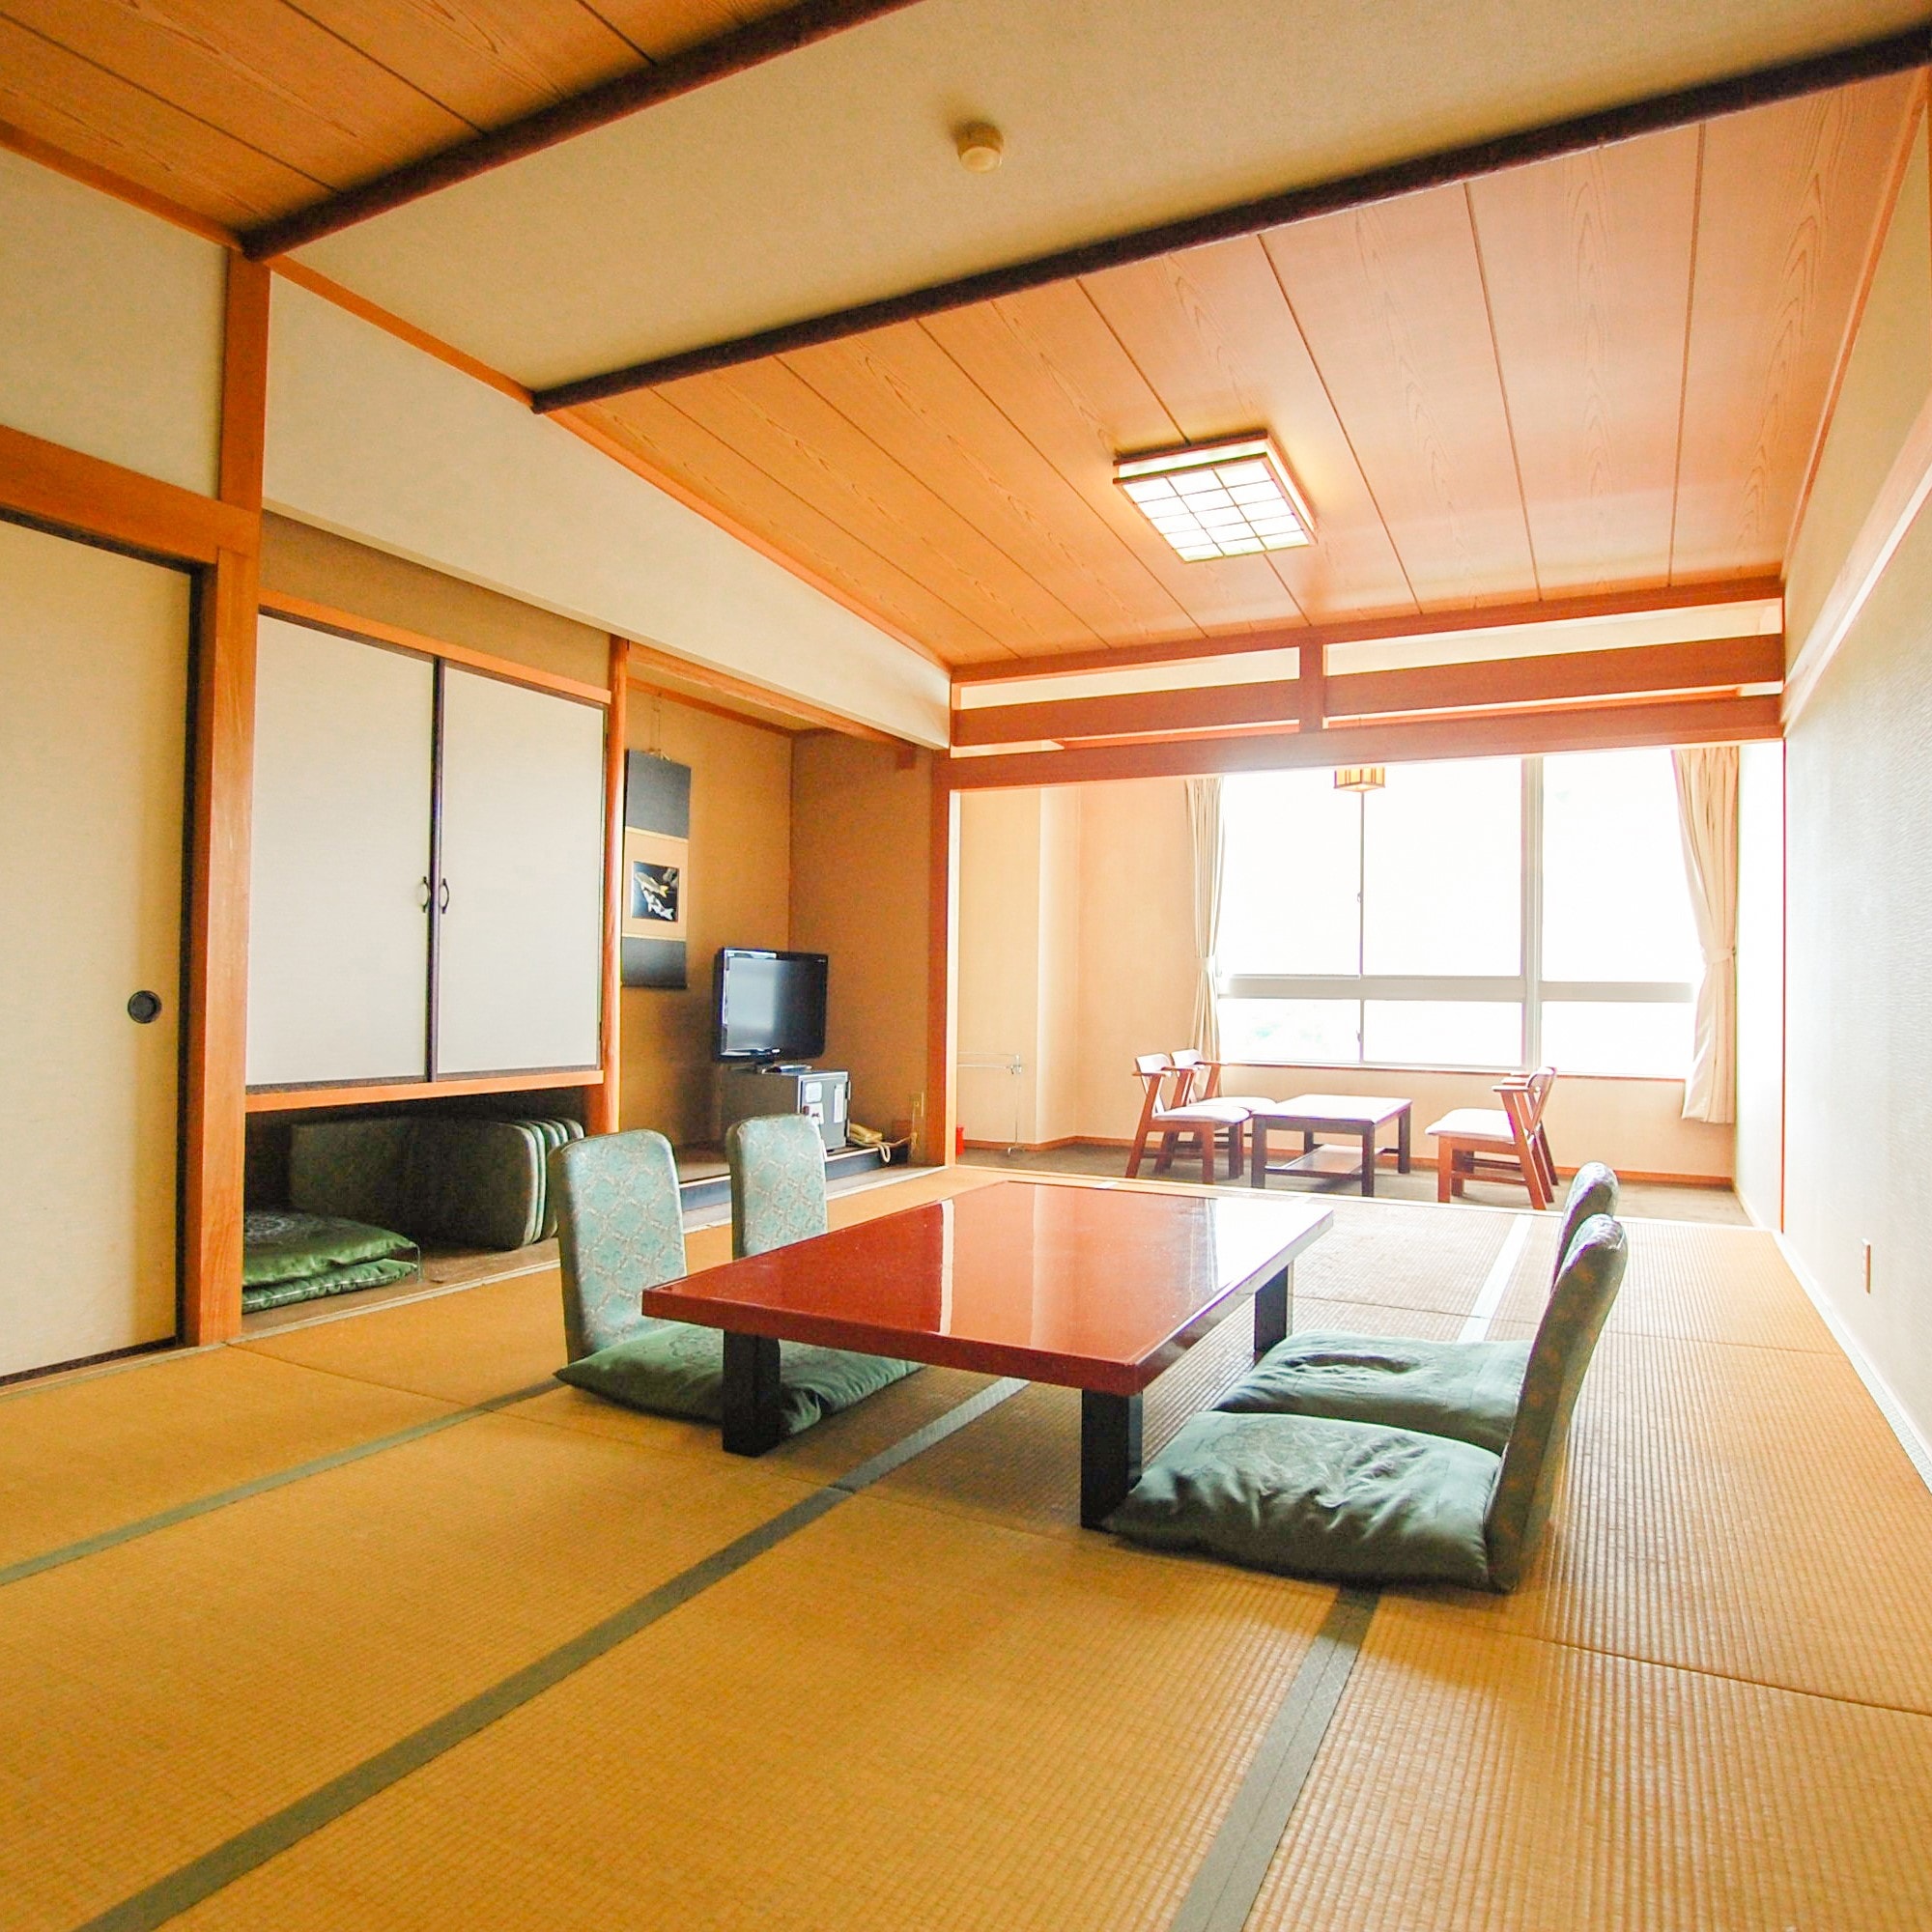 Kamar bergaya Jepang (14 tikar tatami) dengan pemandangan laut secara diagonal